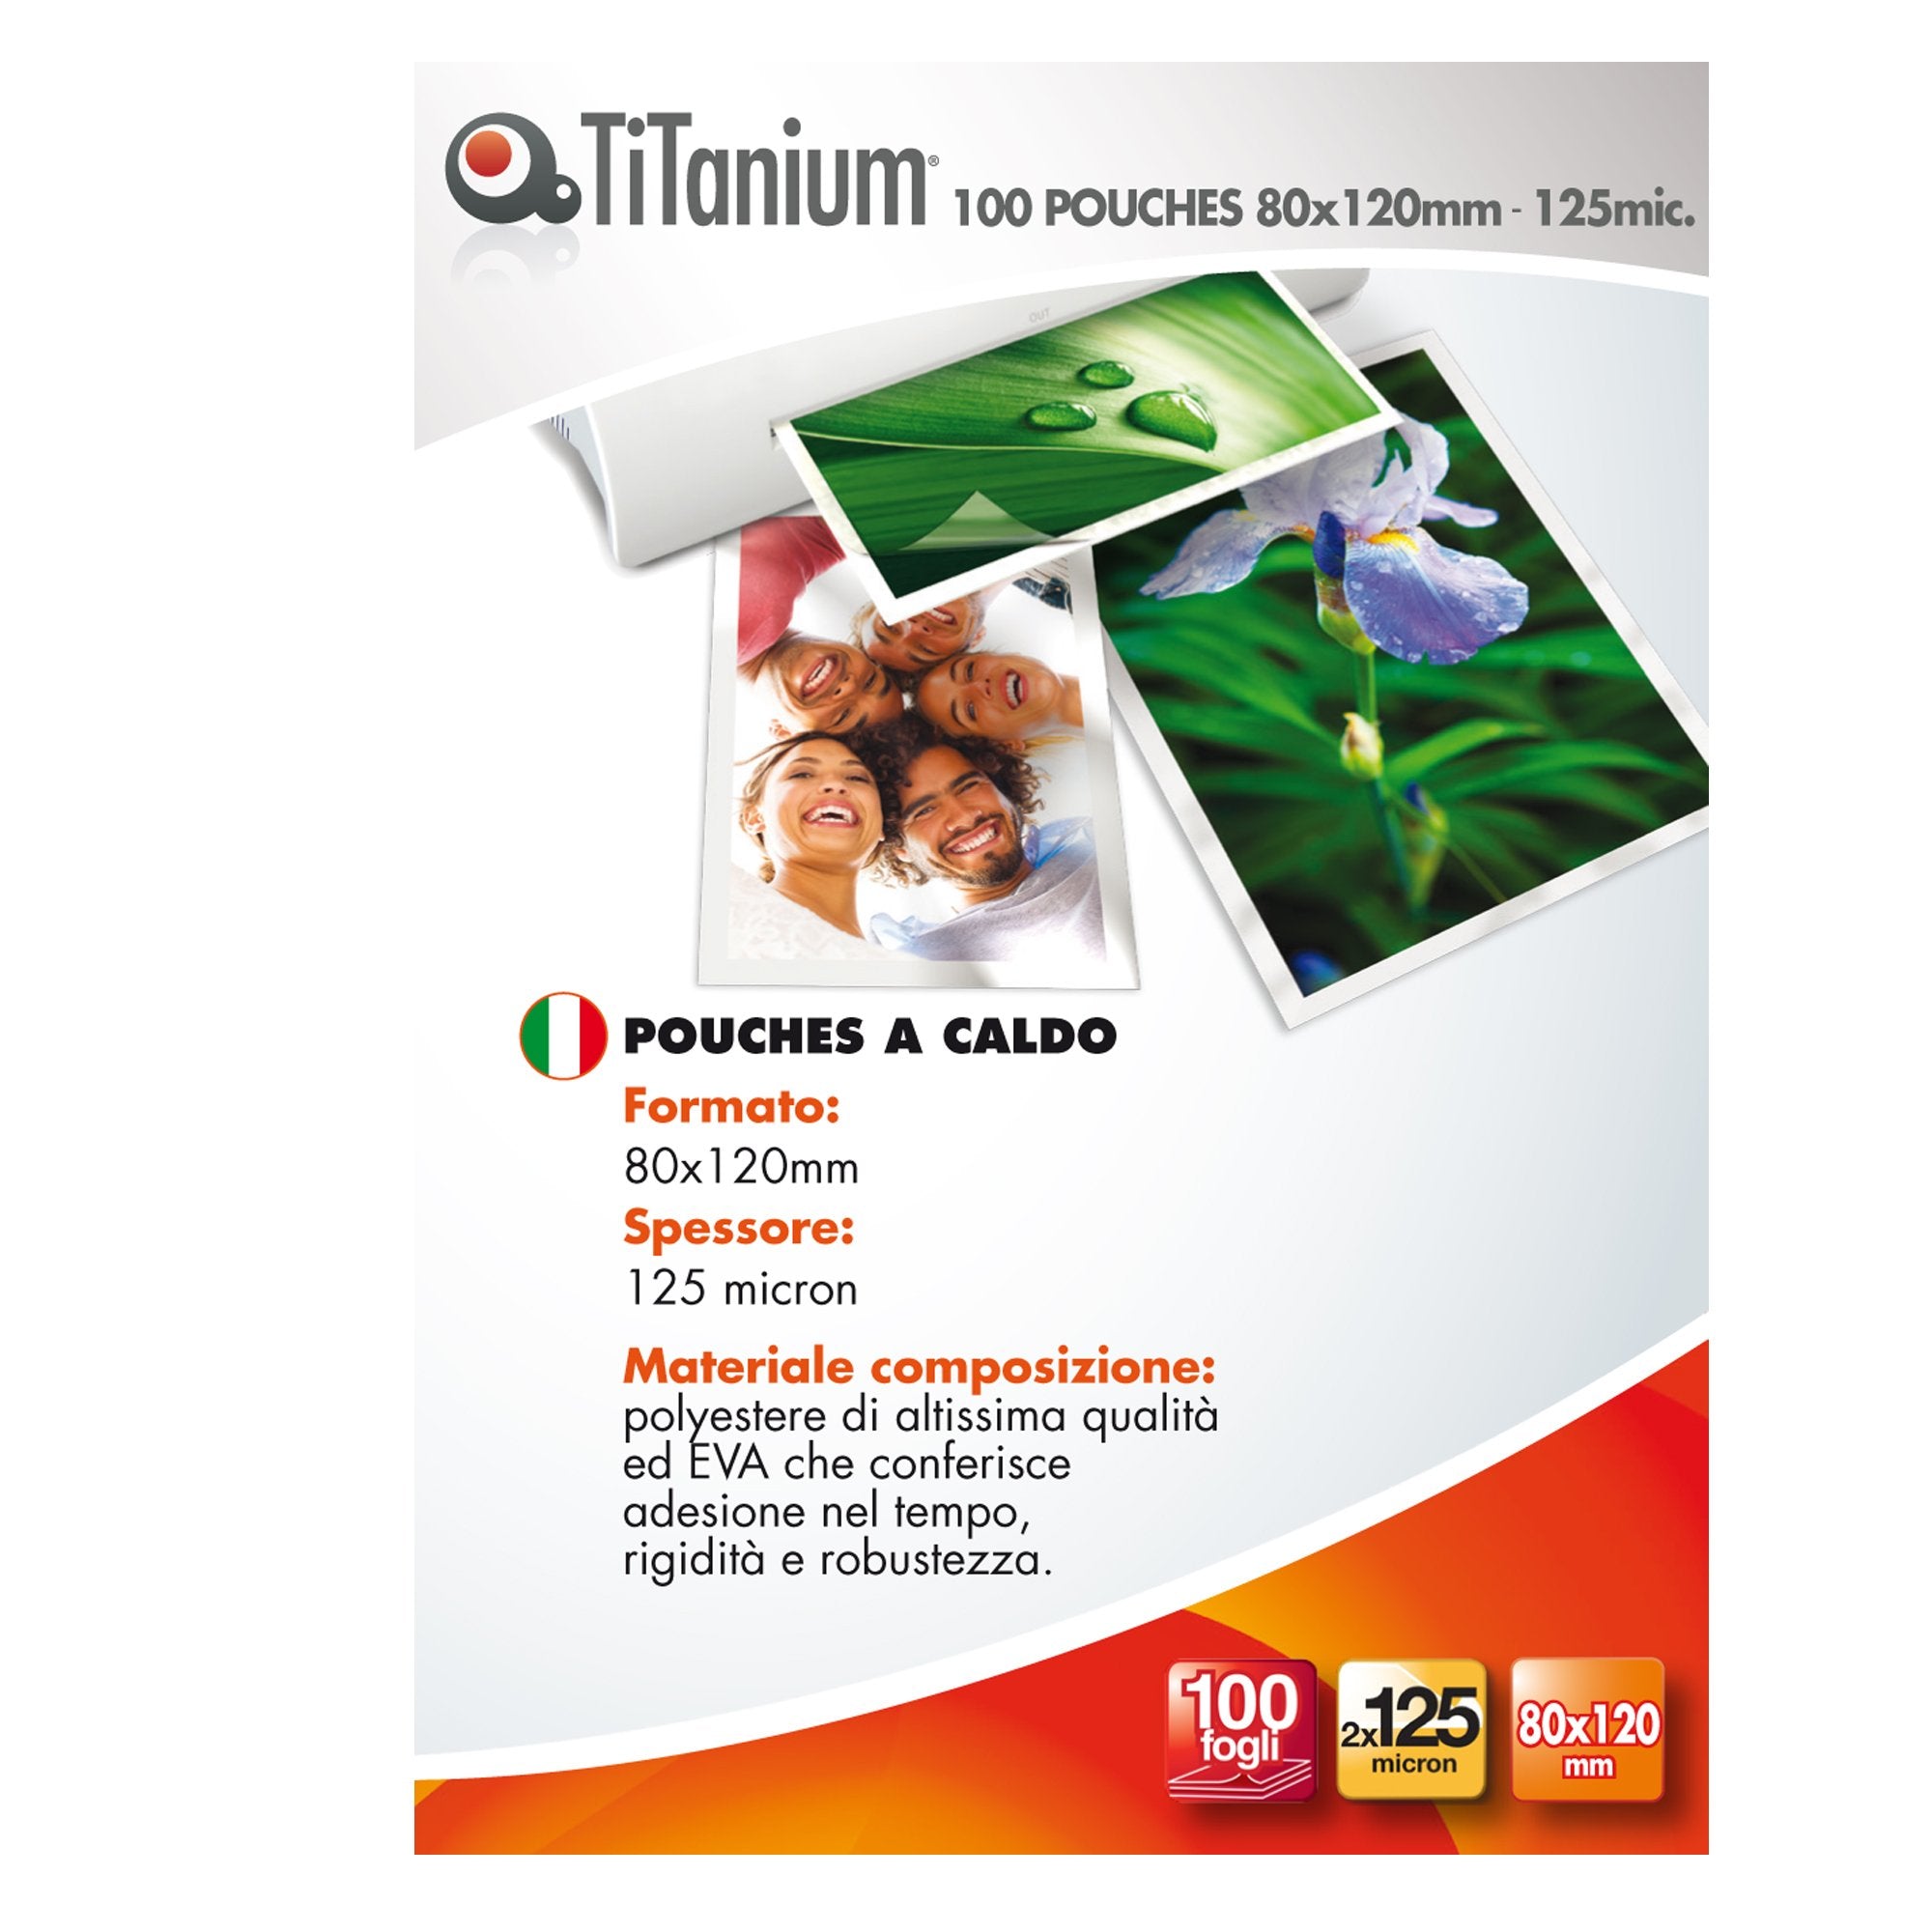 titanium-100-pouches-80x120mm-125my-swiss-card